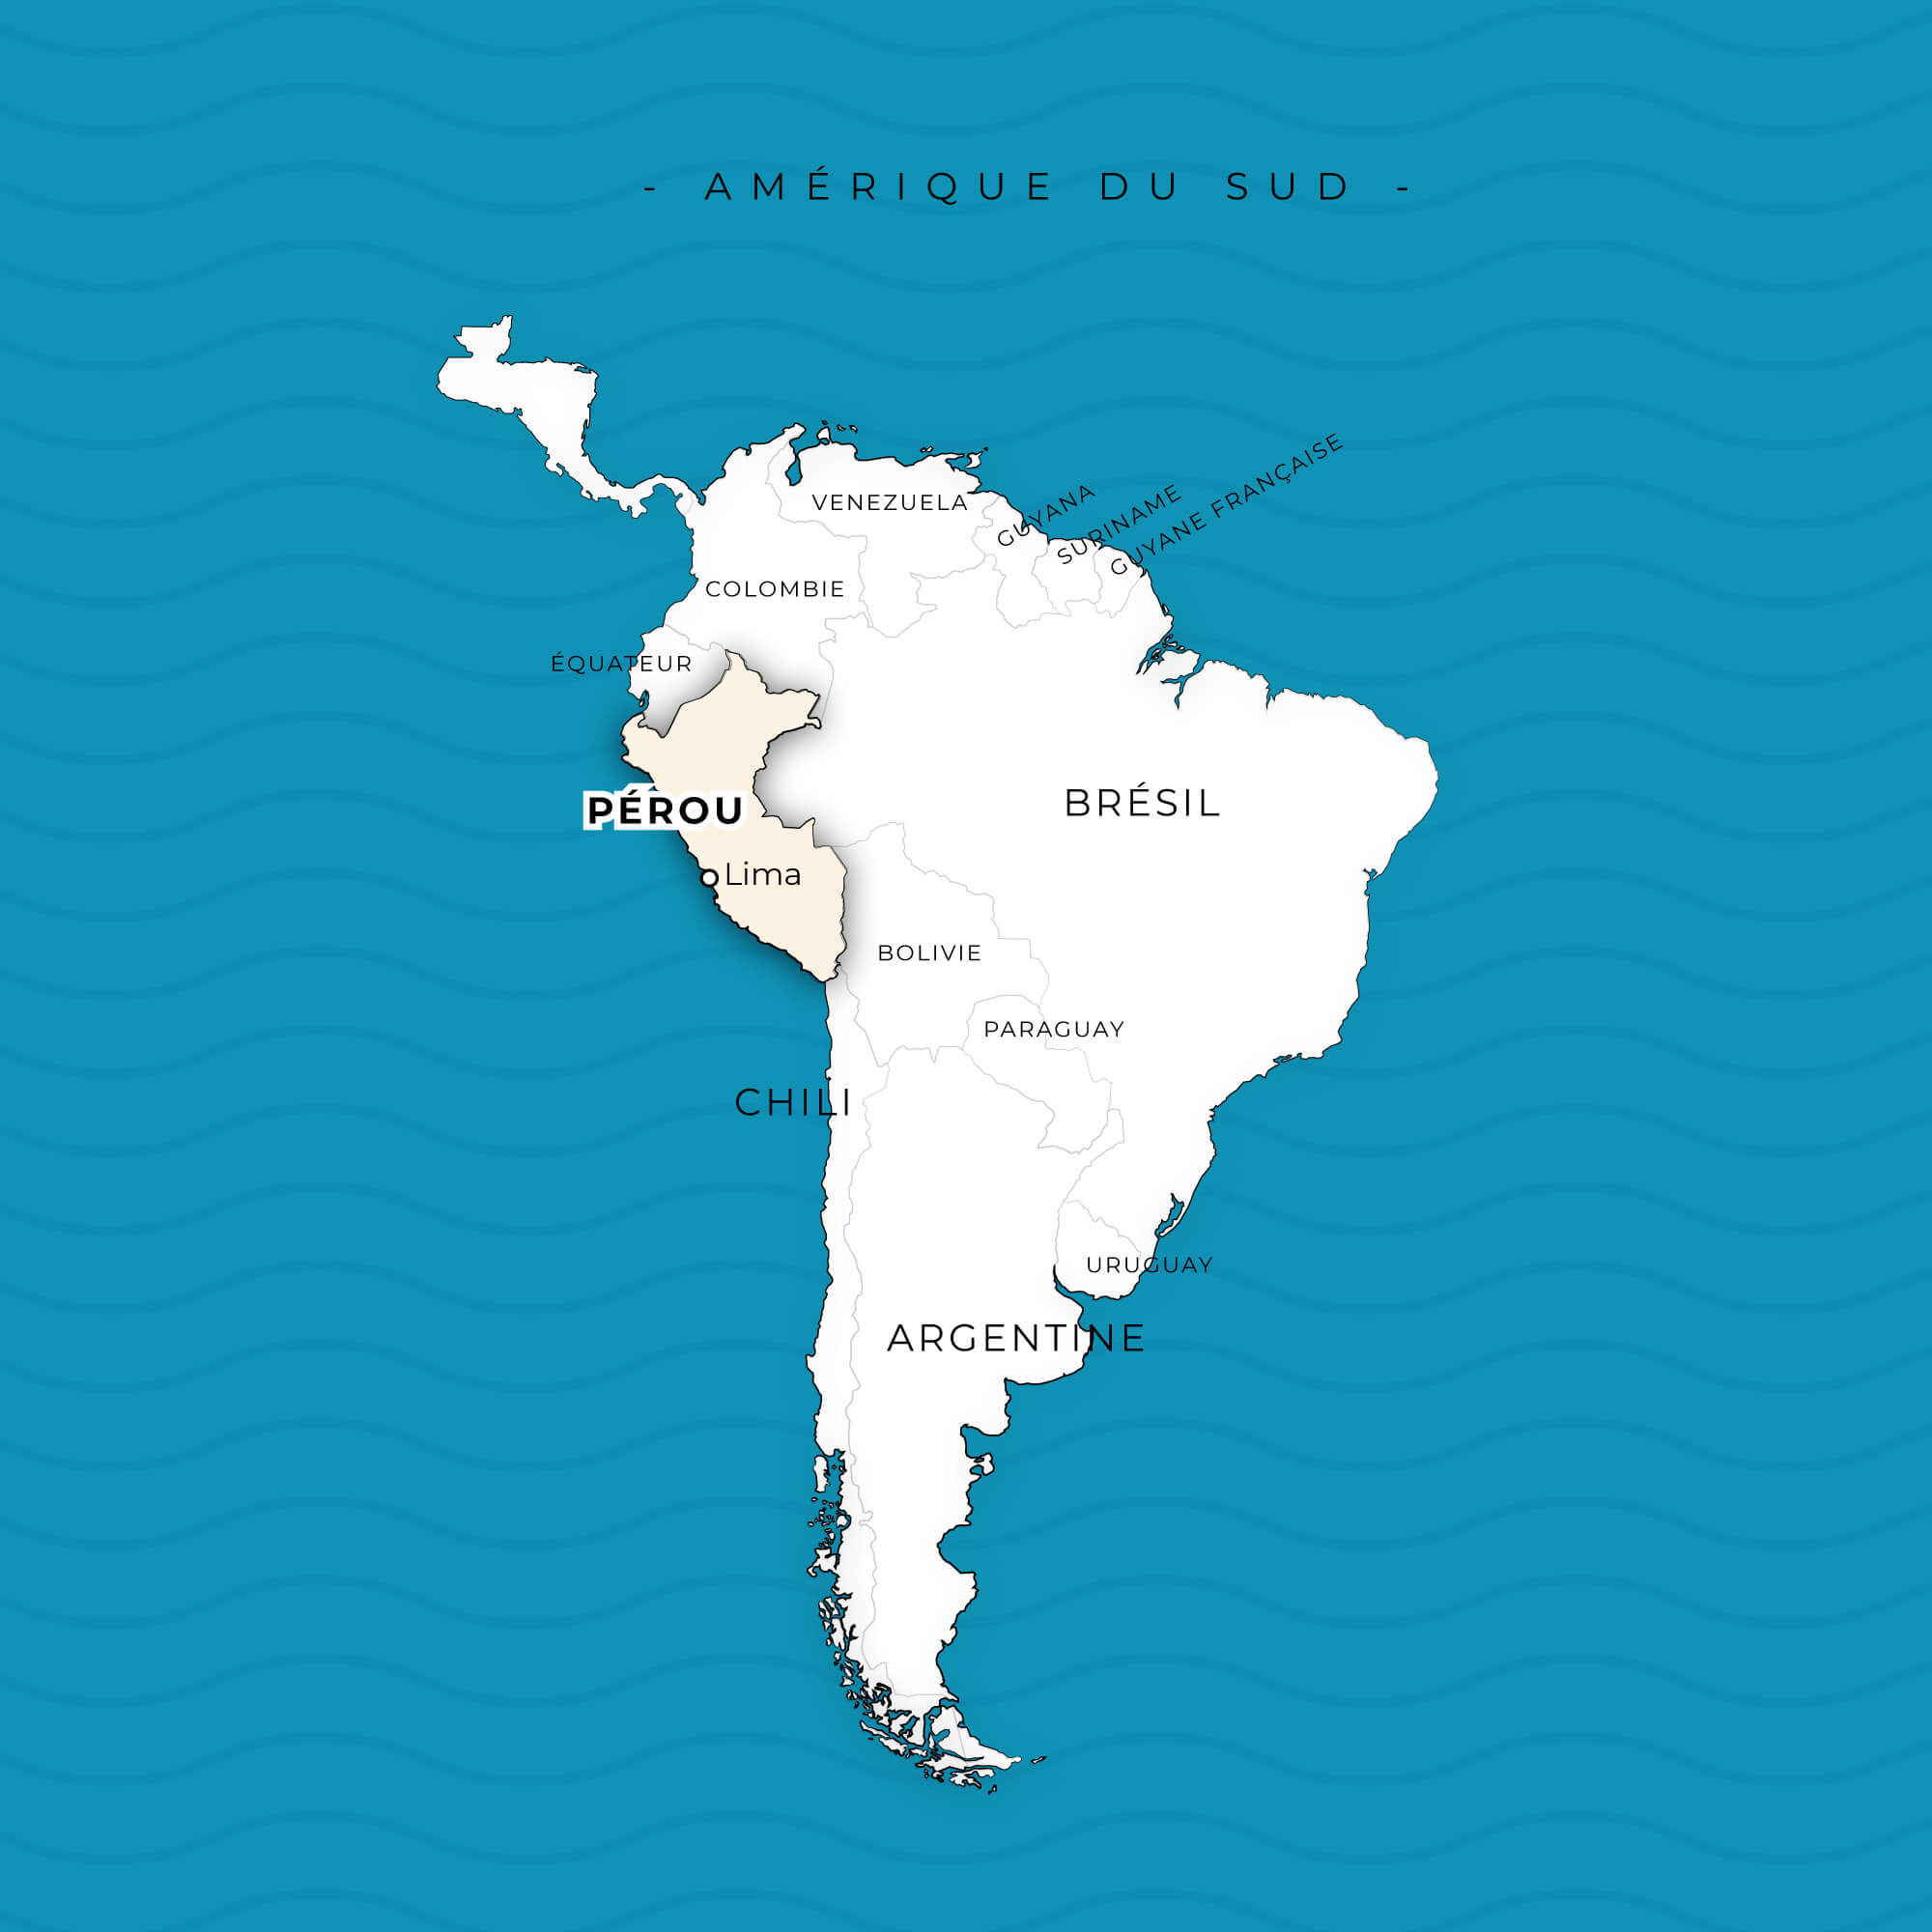 Cartographie - Création de cartes illustrées créatives - Ici une carte de l'Amérique du Sud © Kalao Studio